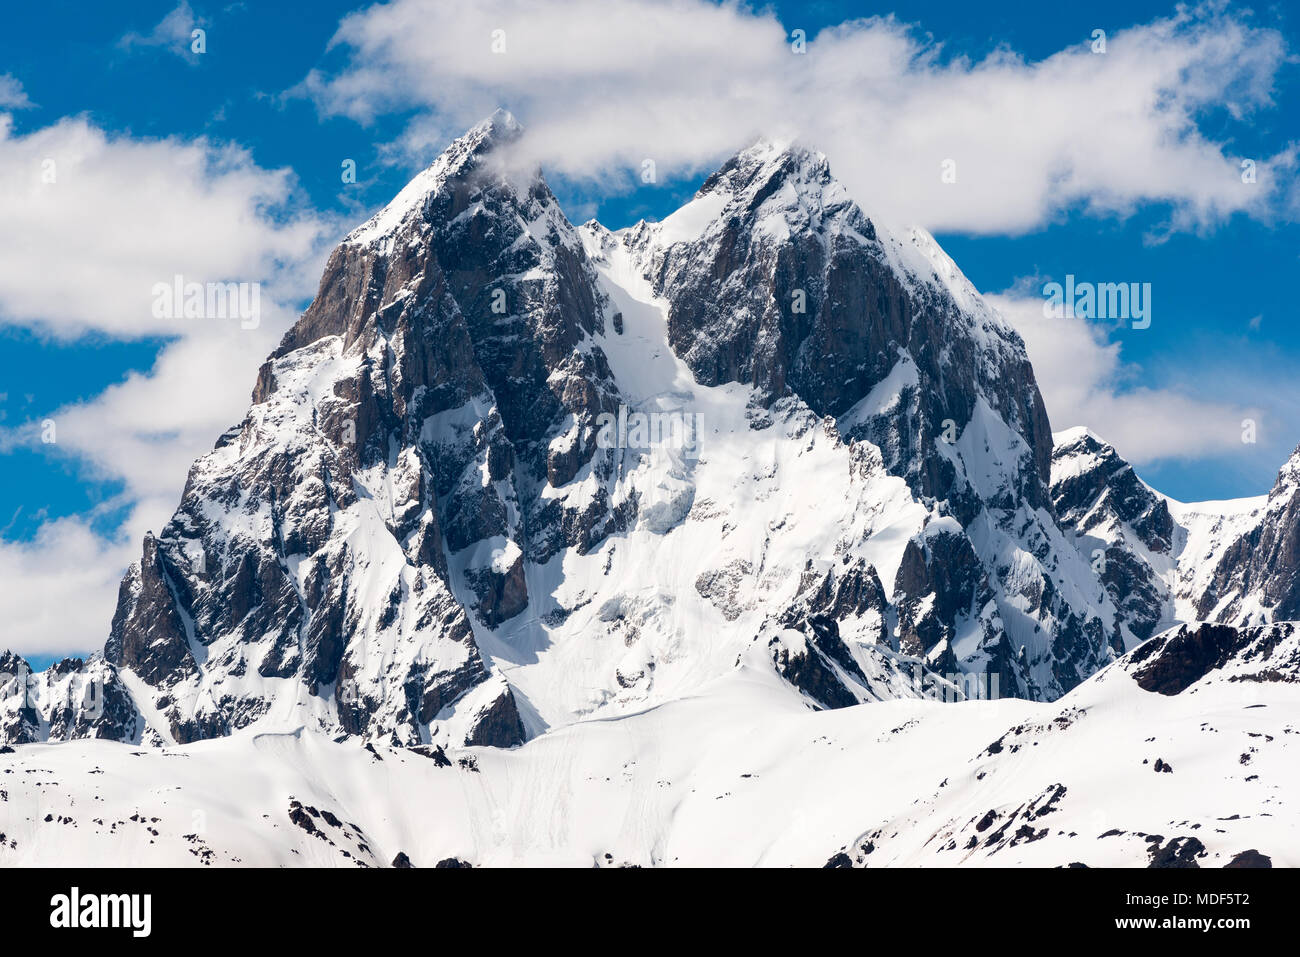 La parte superior de la montaña Ushba, alrededor de 4700 m, contra el cielo azul con nubes preciosos. Primer plano de la famosa doble pico del Cáucaso. Svaneti, Georgia. Foto de stock